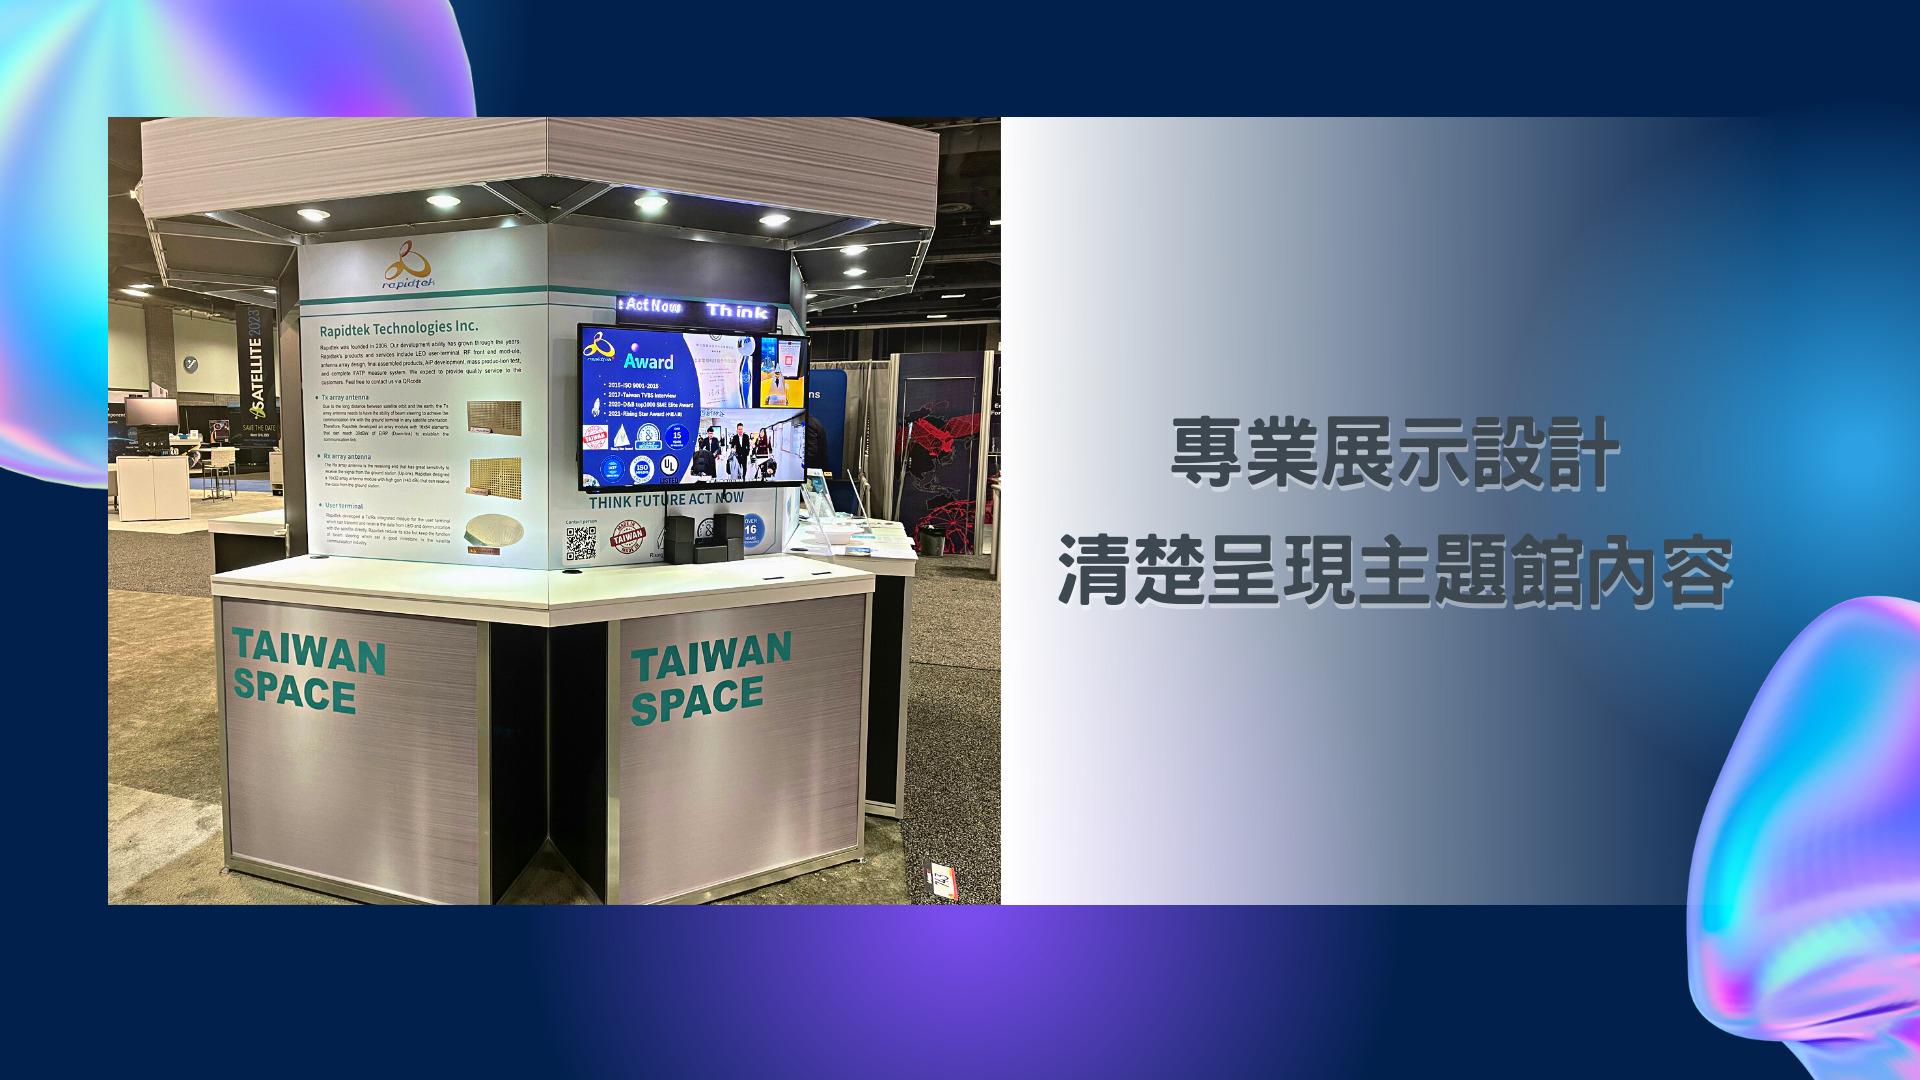 王一設計, 展場設計, 攤位設計, TaiwanSpace台灣形象館, ITRI工研院, Satellite2022, 美國衛星通訊展